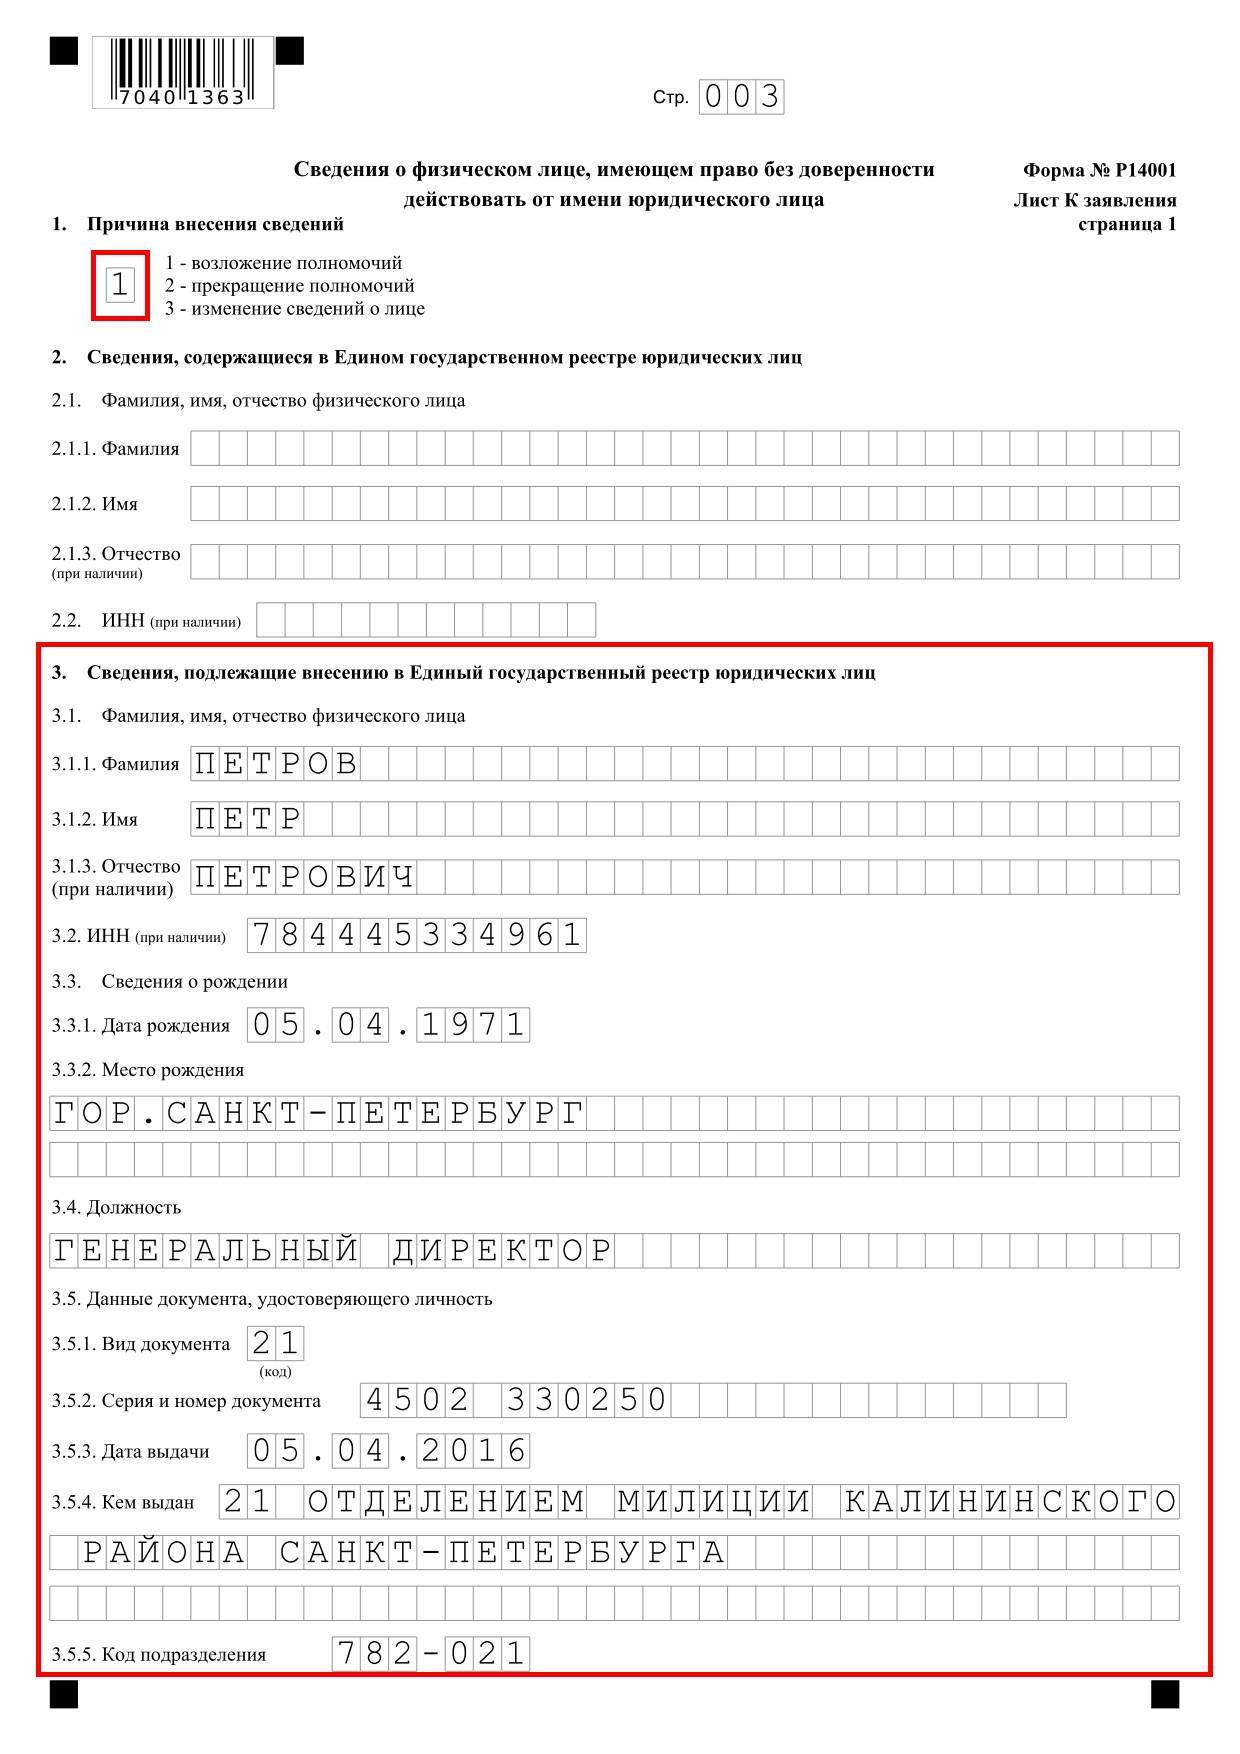 Как заполнять форму р14001. смена директора: тонкости оформления :: businessman.ru